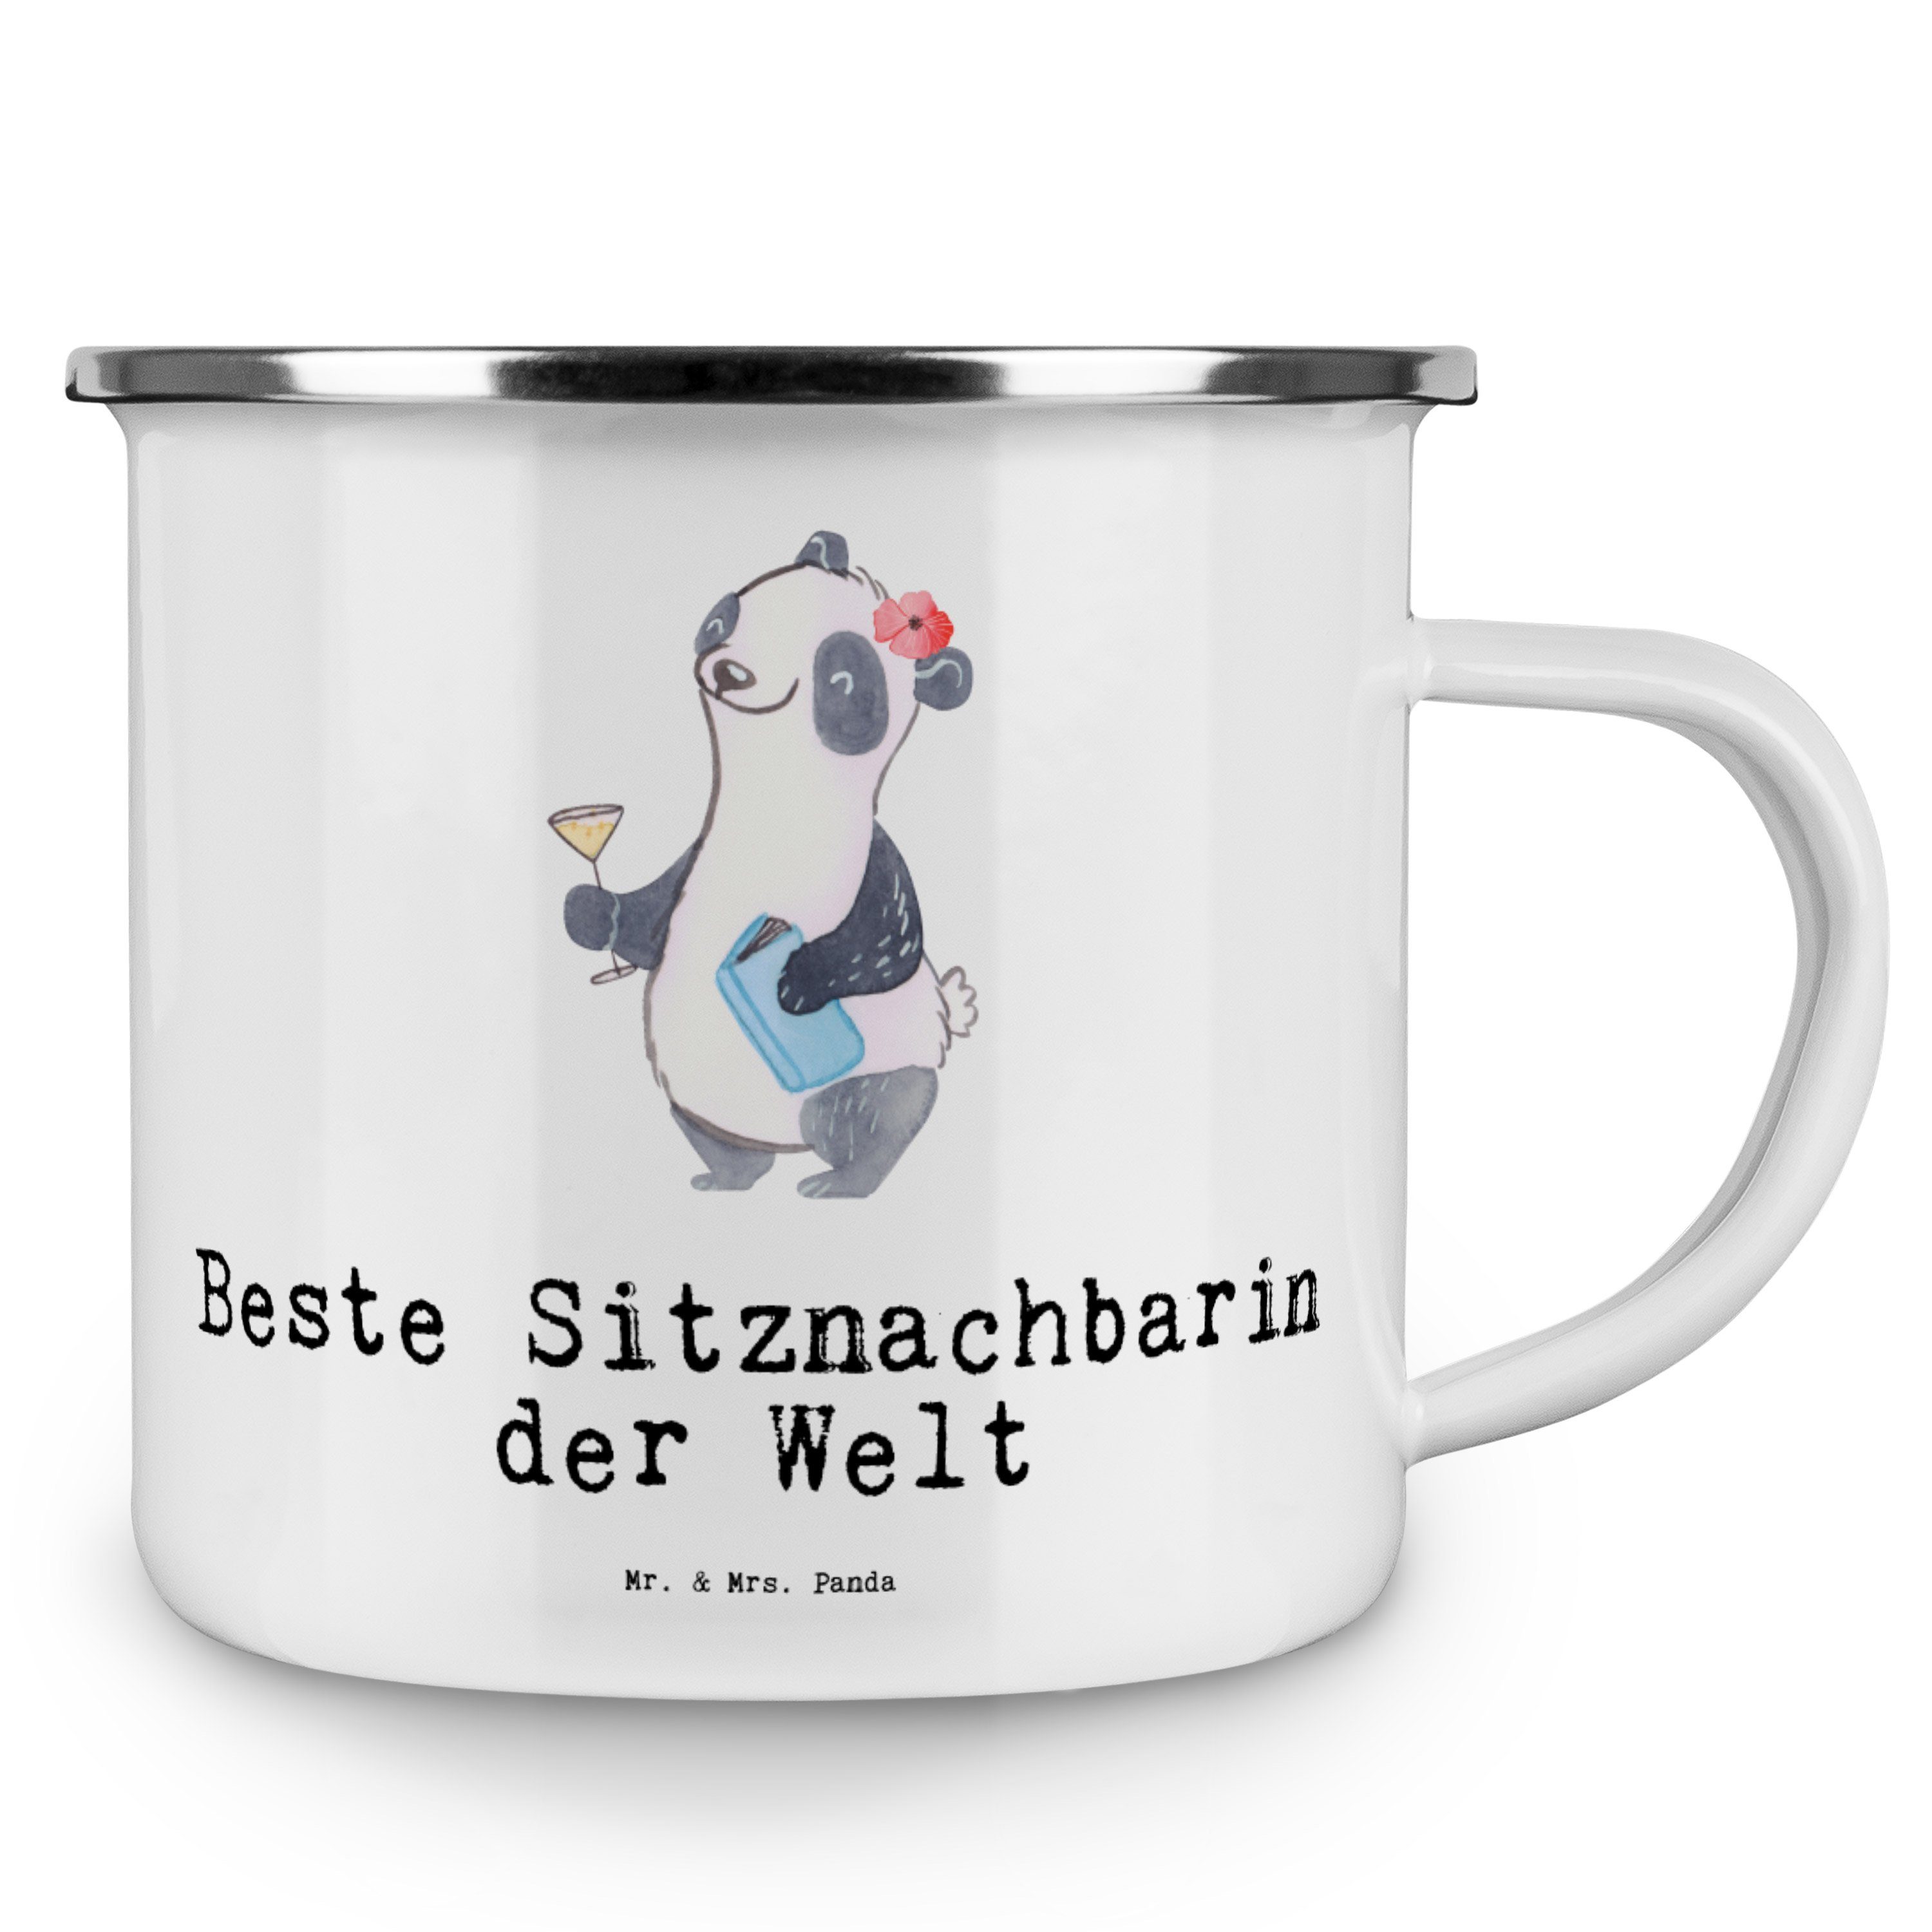 Mr. Camping & Sitznachbarin - Beste Geschenk, Mrs. Becher Tasse - der M, Panda Welt Panda Weiß Emaille